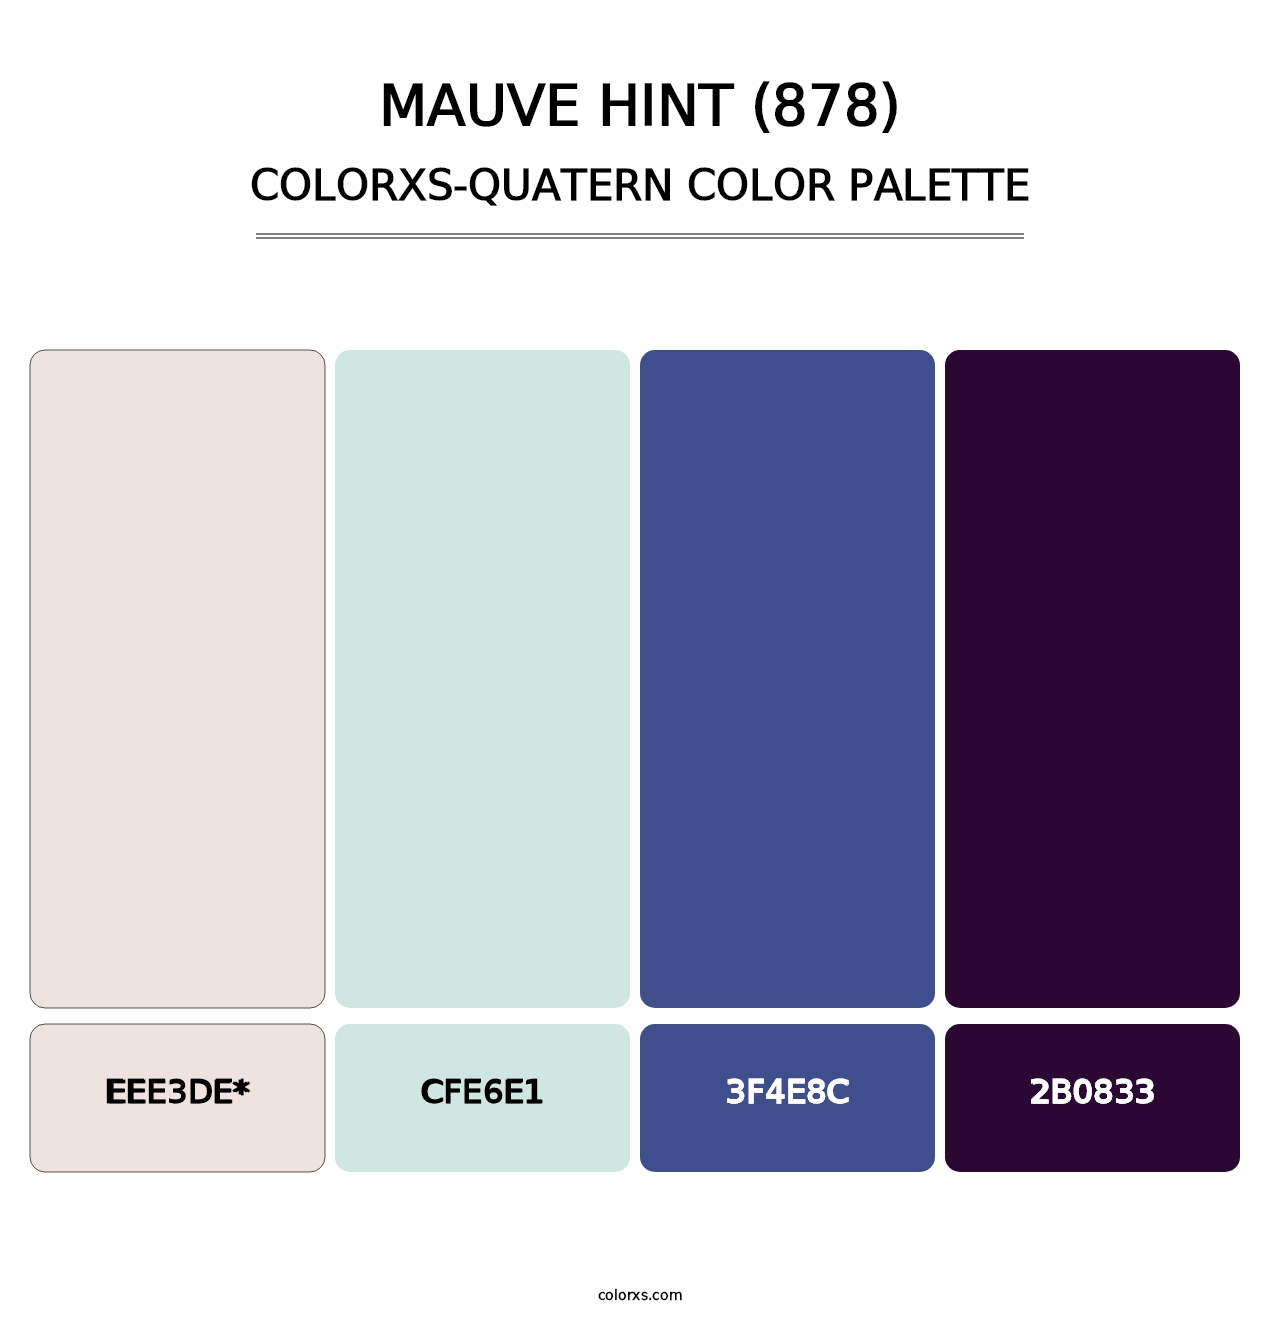 Mauve Hint (878) - Colorxs Quatern Palette